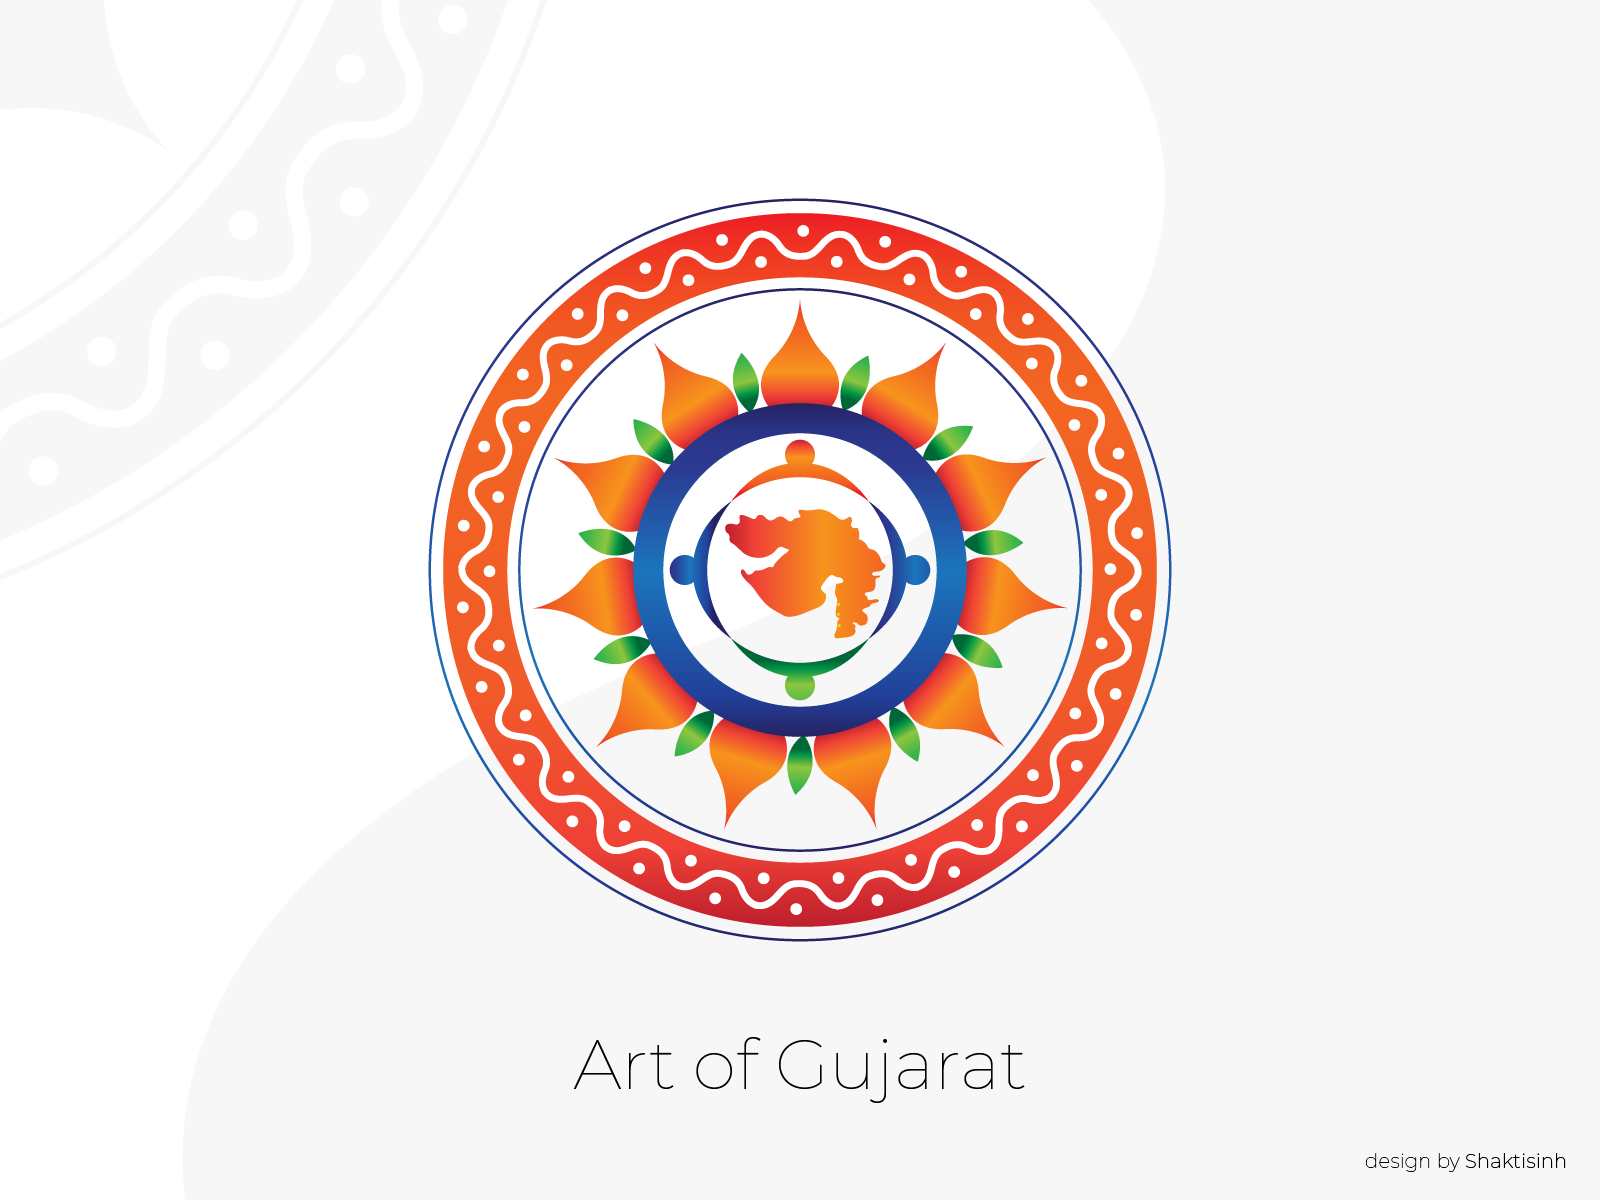 tourism logo of gujarat